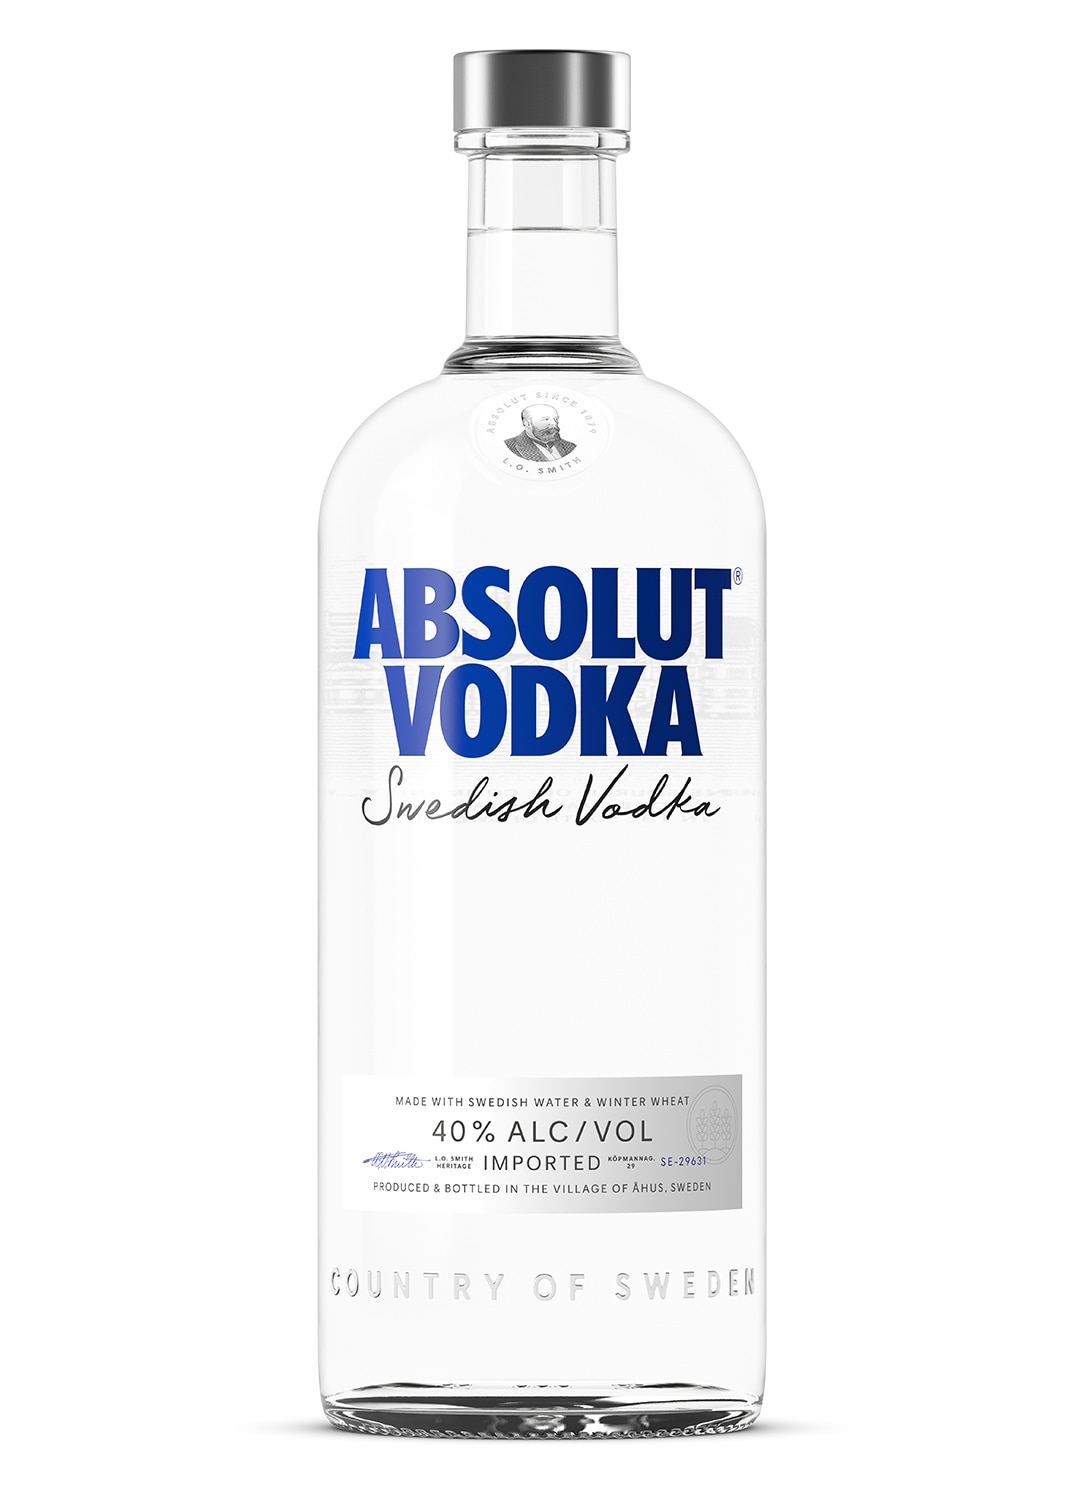 absolut vodka 1000ml bottle against white background